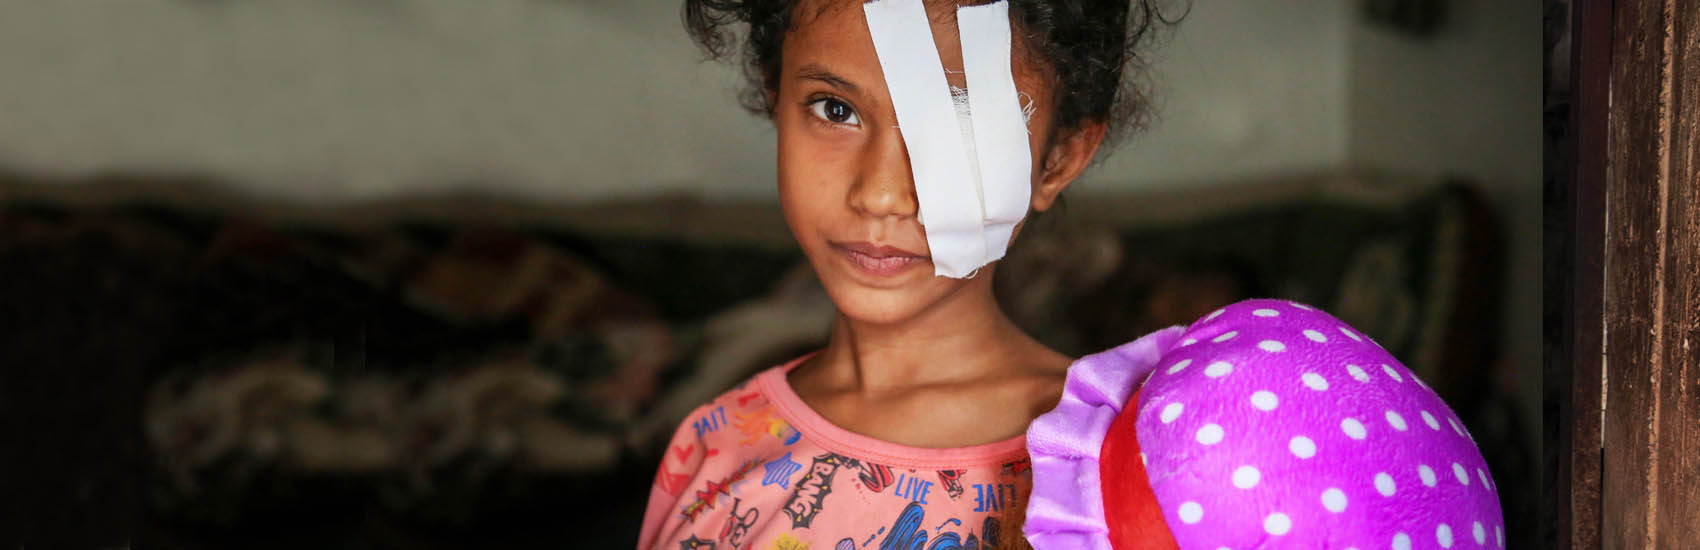 Help Children In Yemen Save The Children